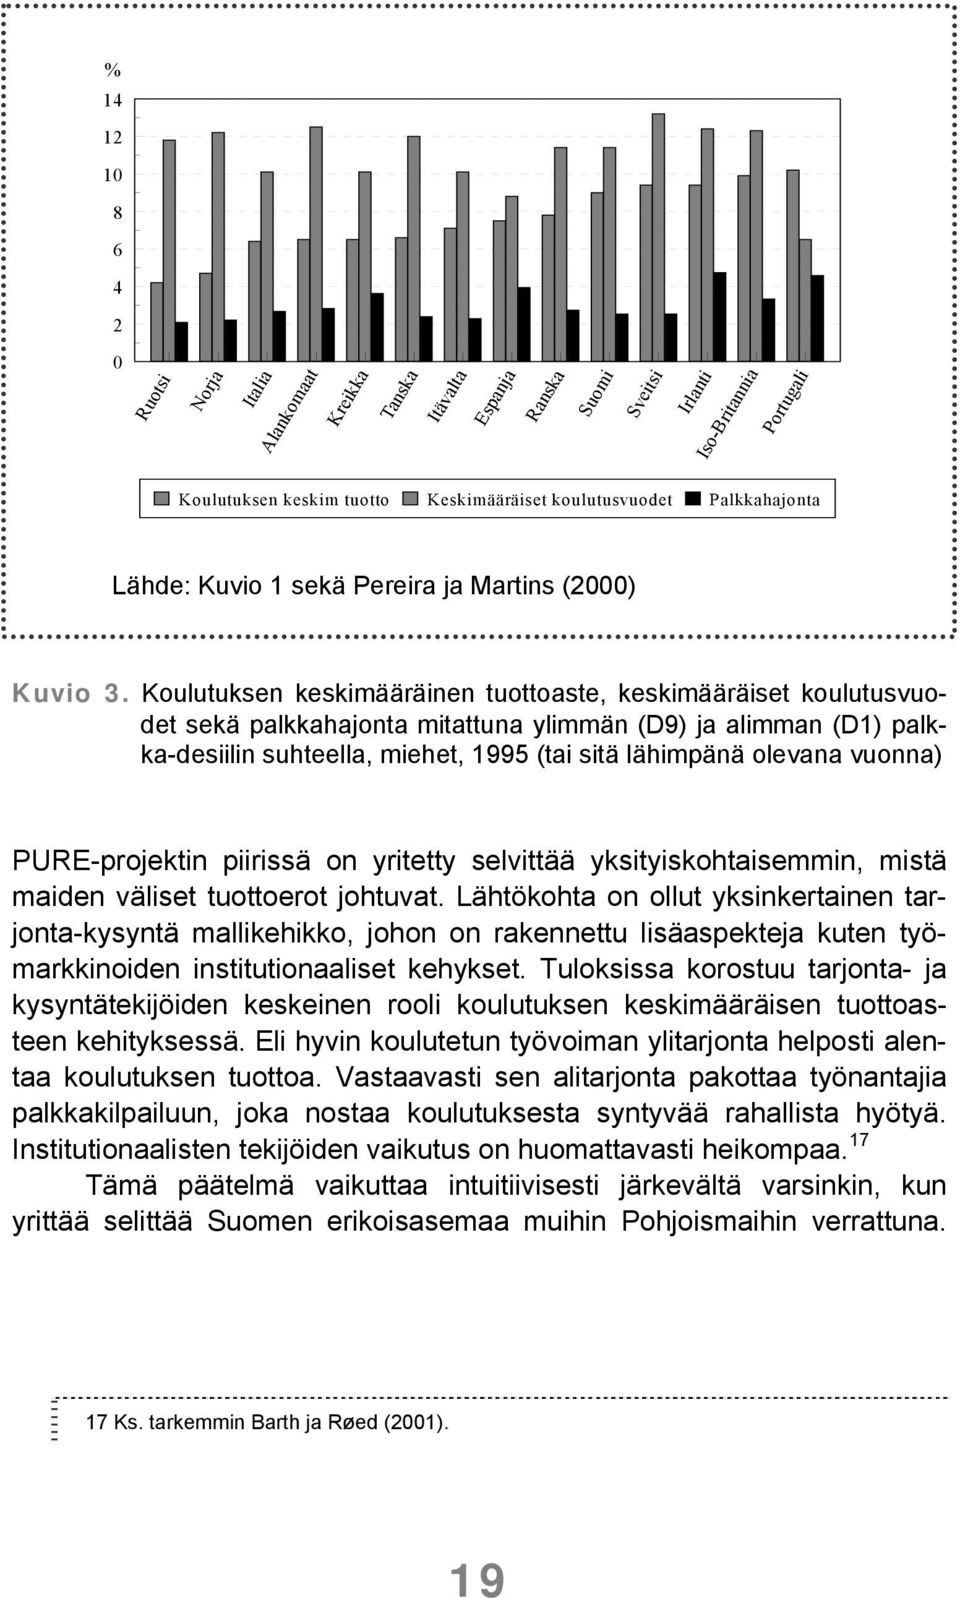 Koulutuksen keskimääräinen tuottoaste, keskimääräiset koulutusvuodet sekä palkkahajonta mitattuna ylimmän (D9) ja alimman (D1) palkka-desiilin suhteella, miehet, 1995 (tai sitä lähimpänä olevana